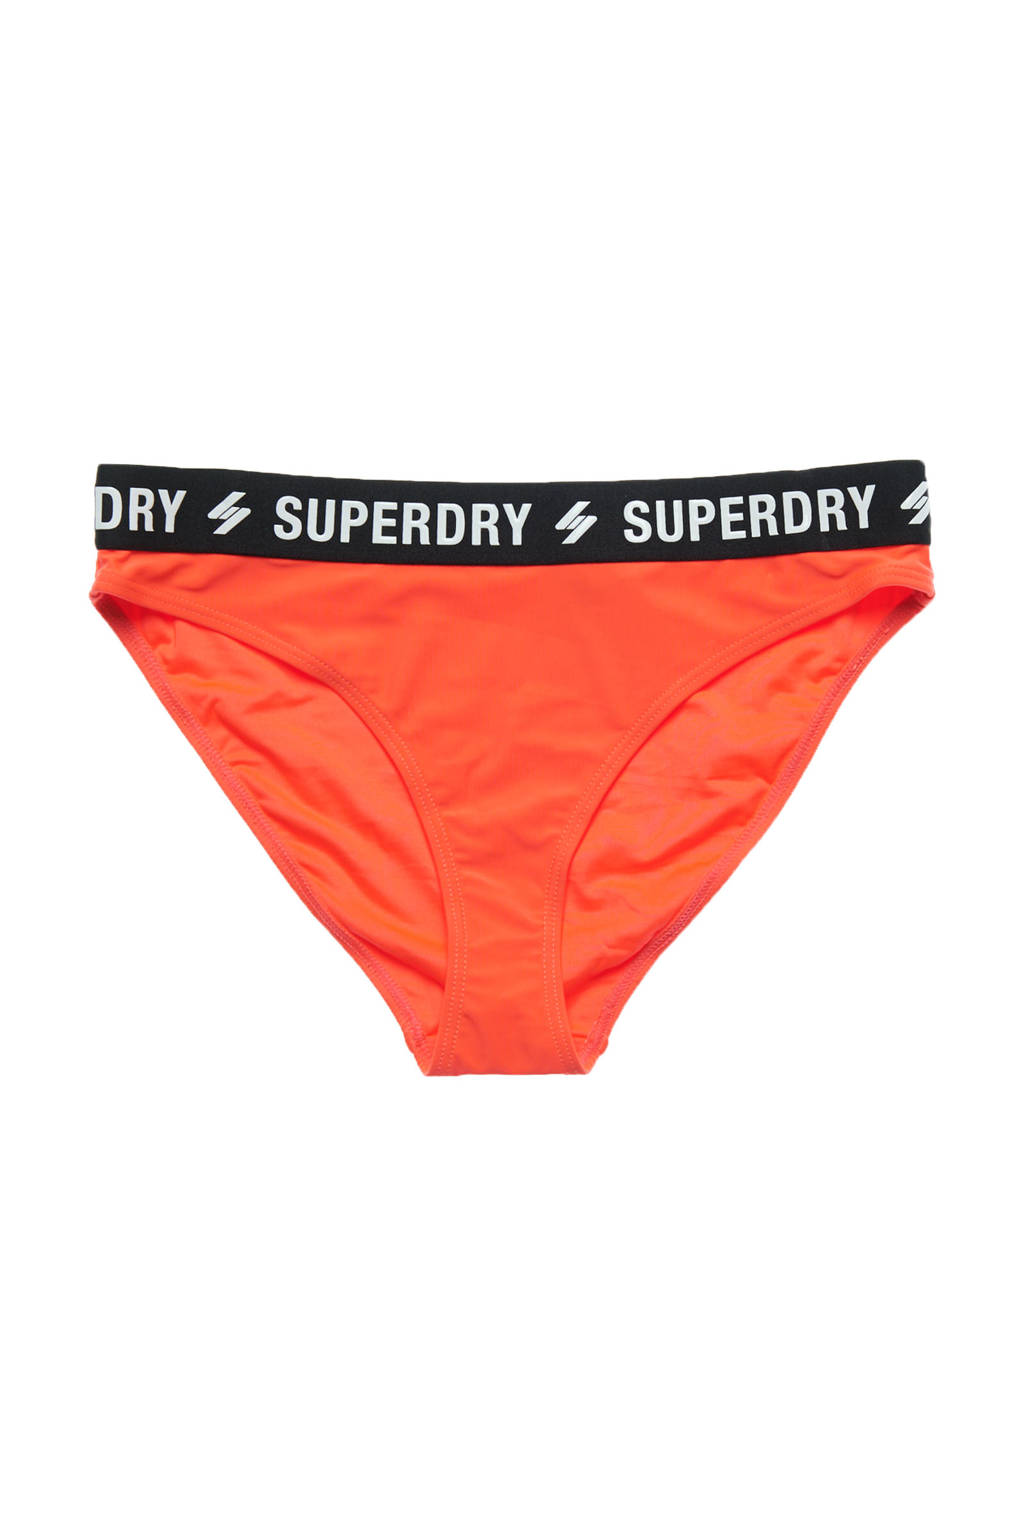 Superdry bikinibroekje oranje